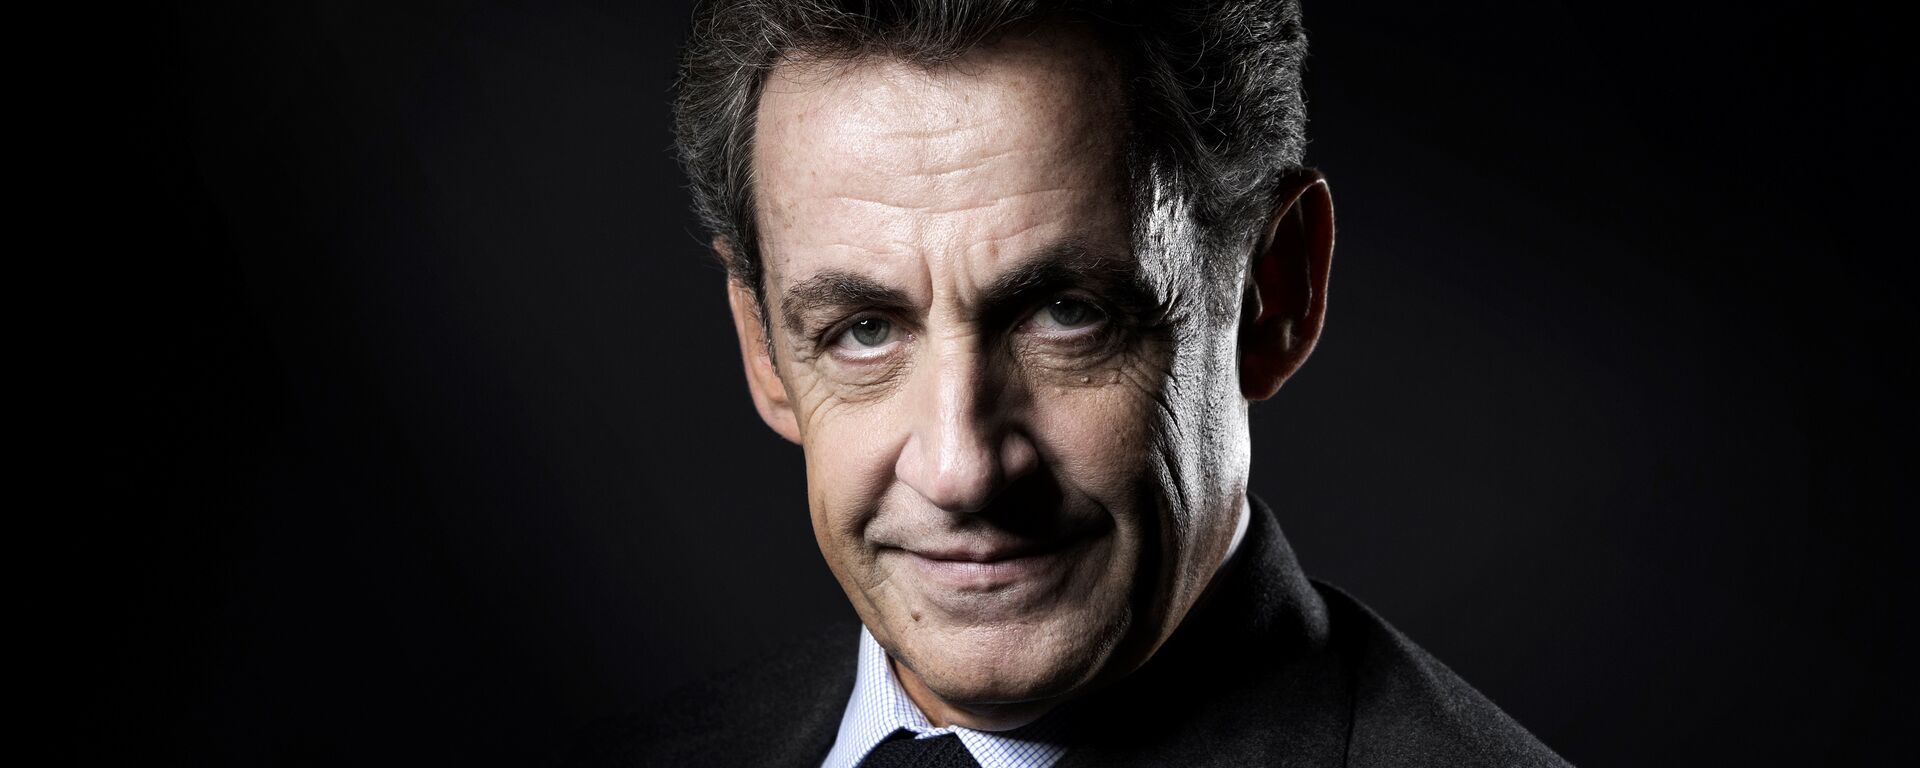 Eski Fransa Cumhurbaşkanı Nicolas Sarkozy - Sputnik Türkiye, 1920, 15.06.2021